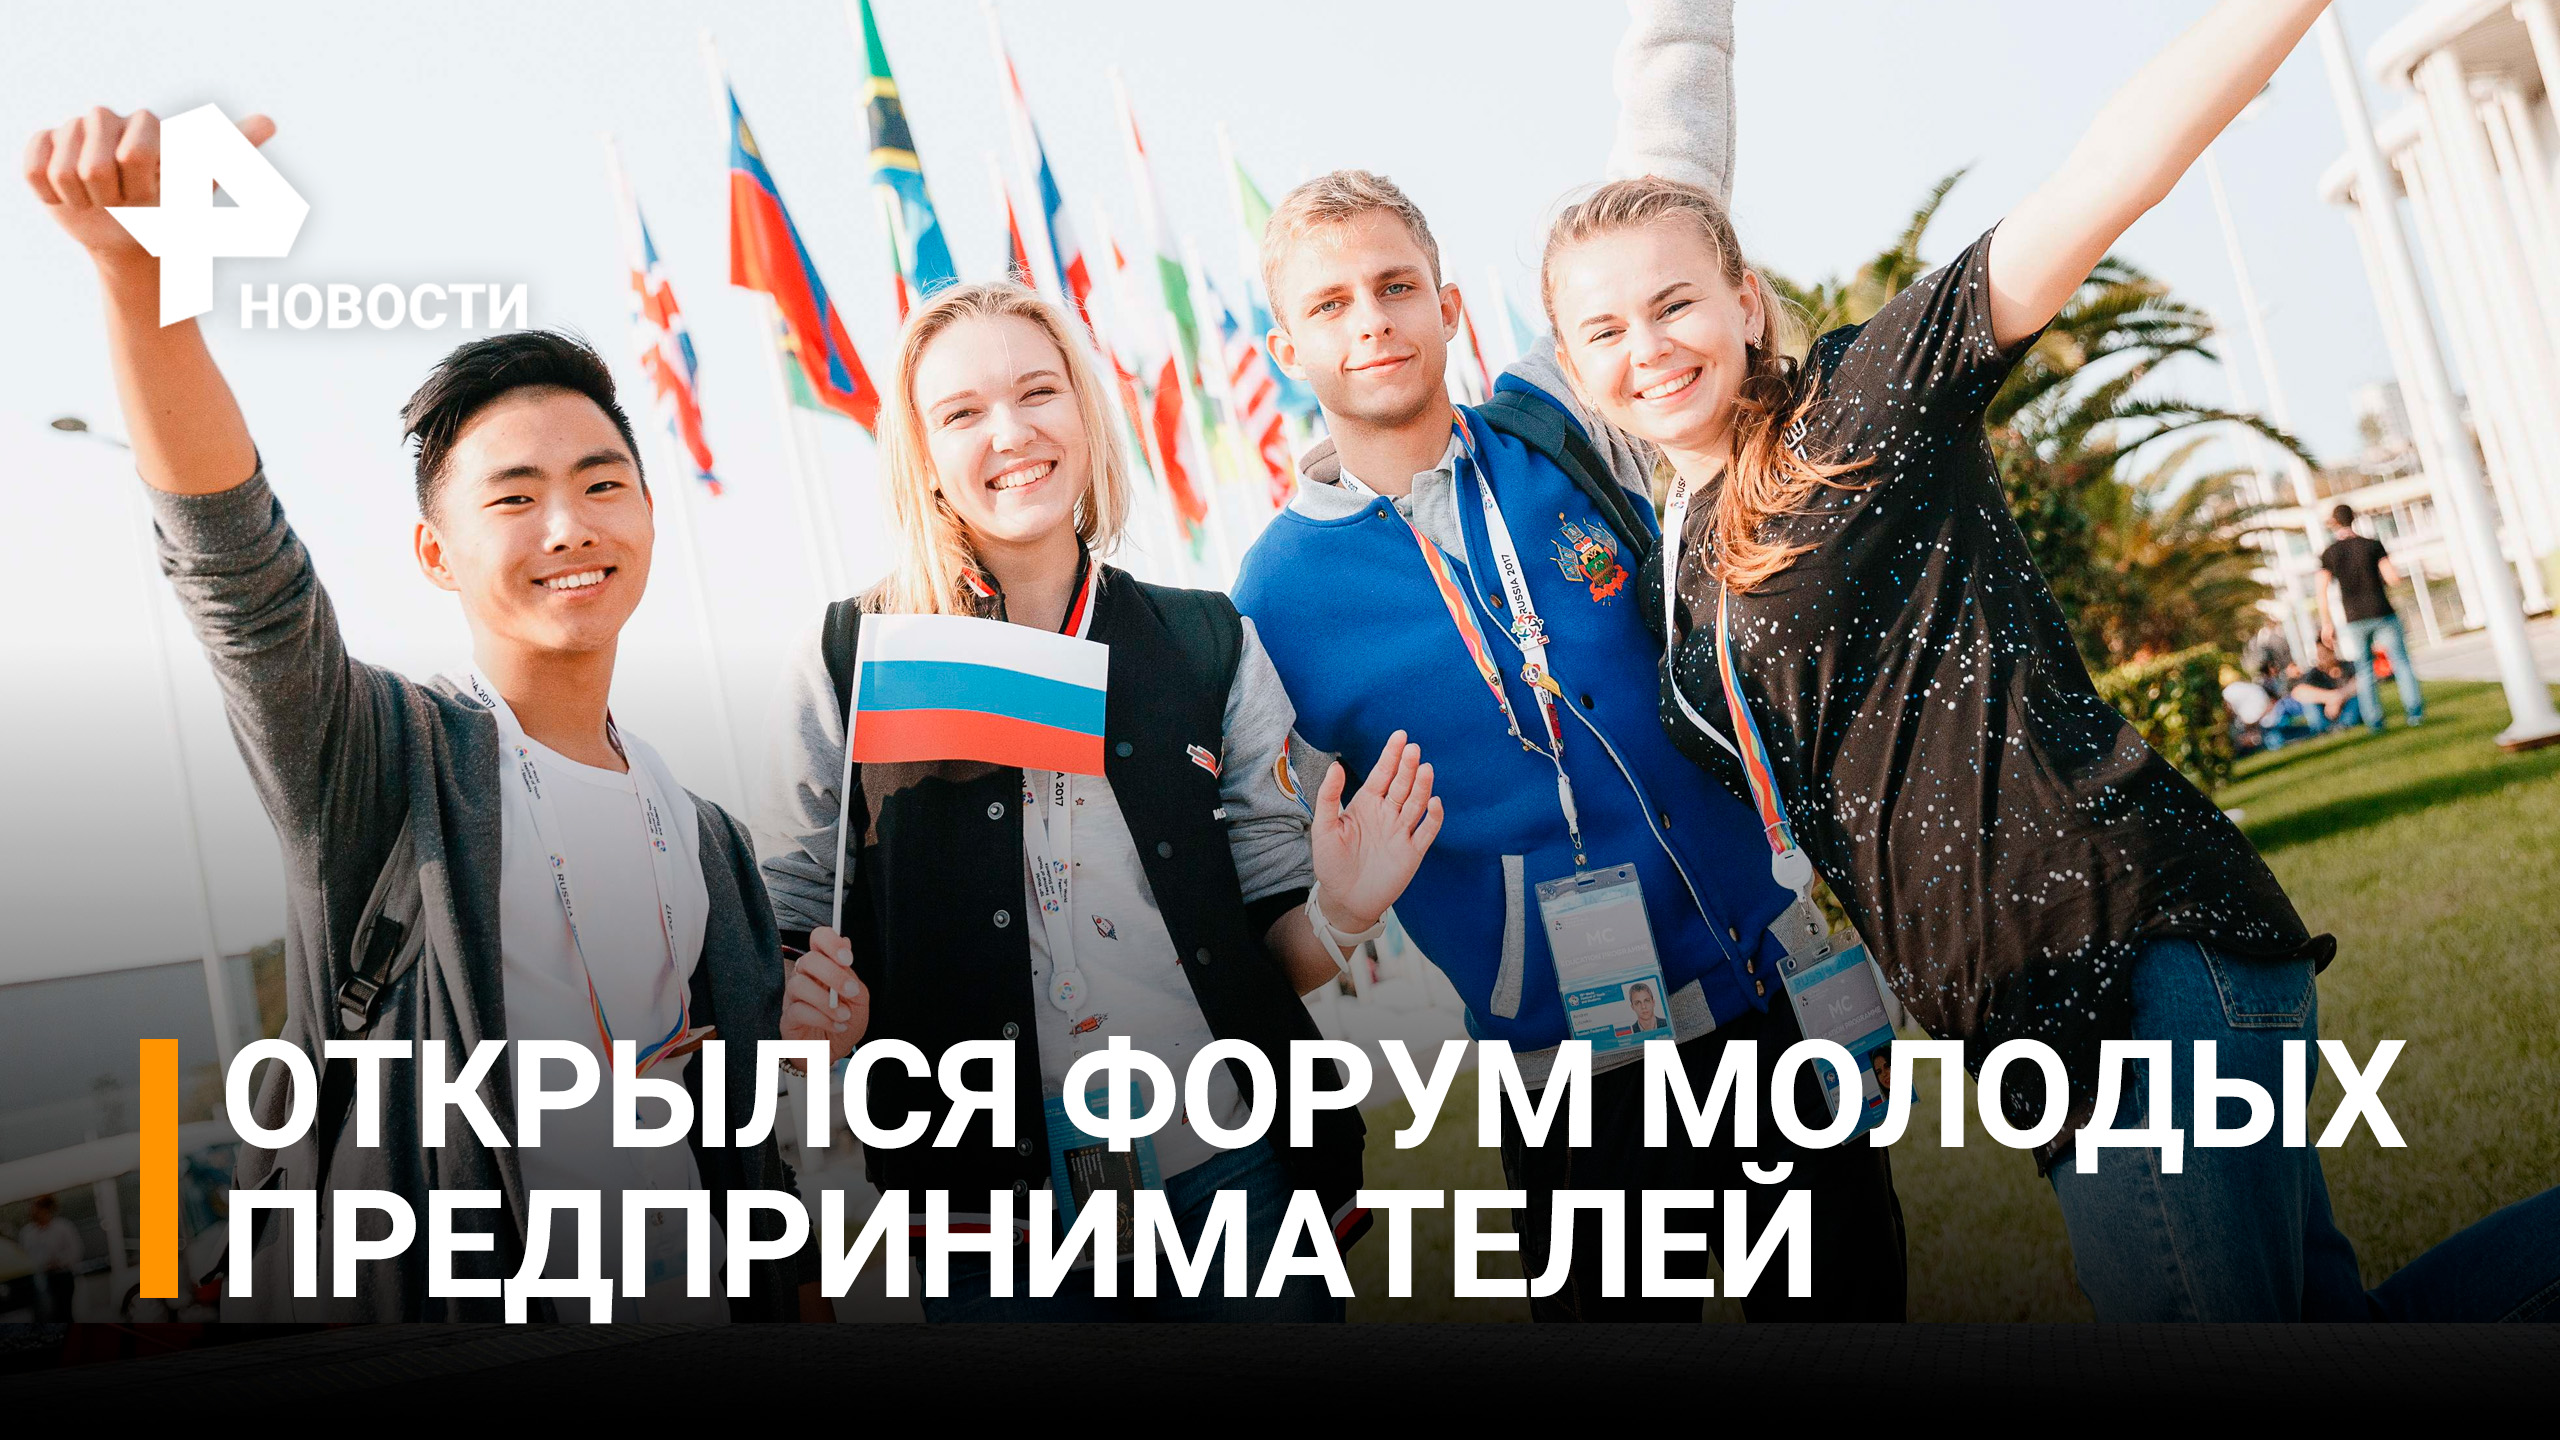 Первый форум молодежных предпринимателей "Июлька" открылся в России / РЕН Новости